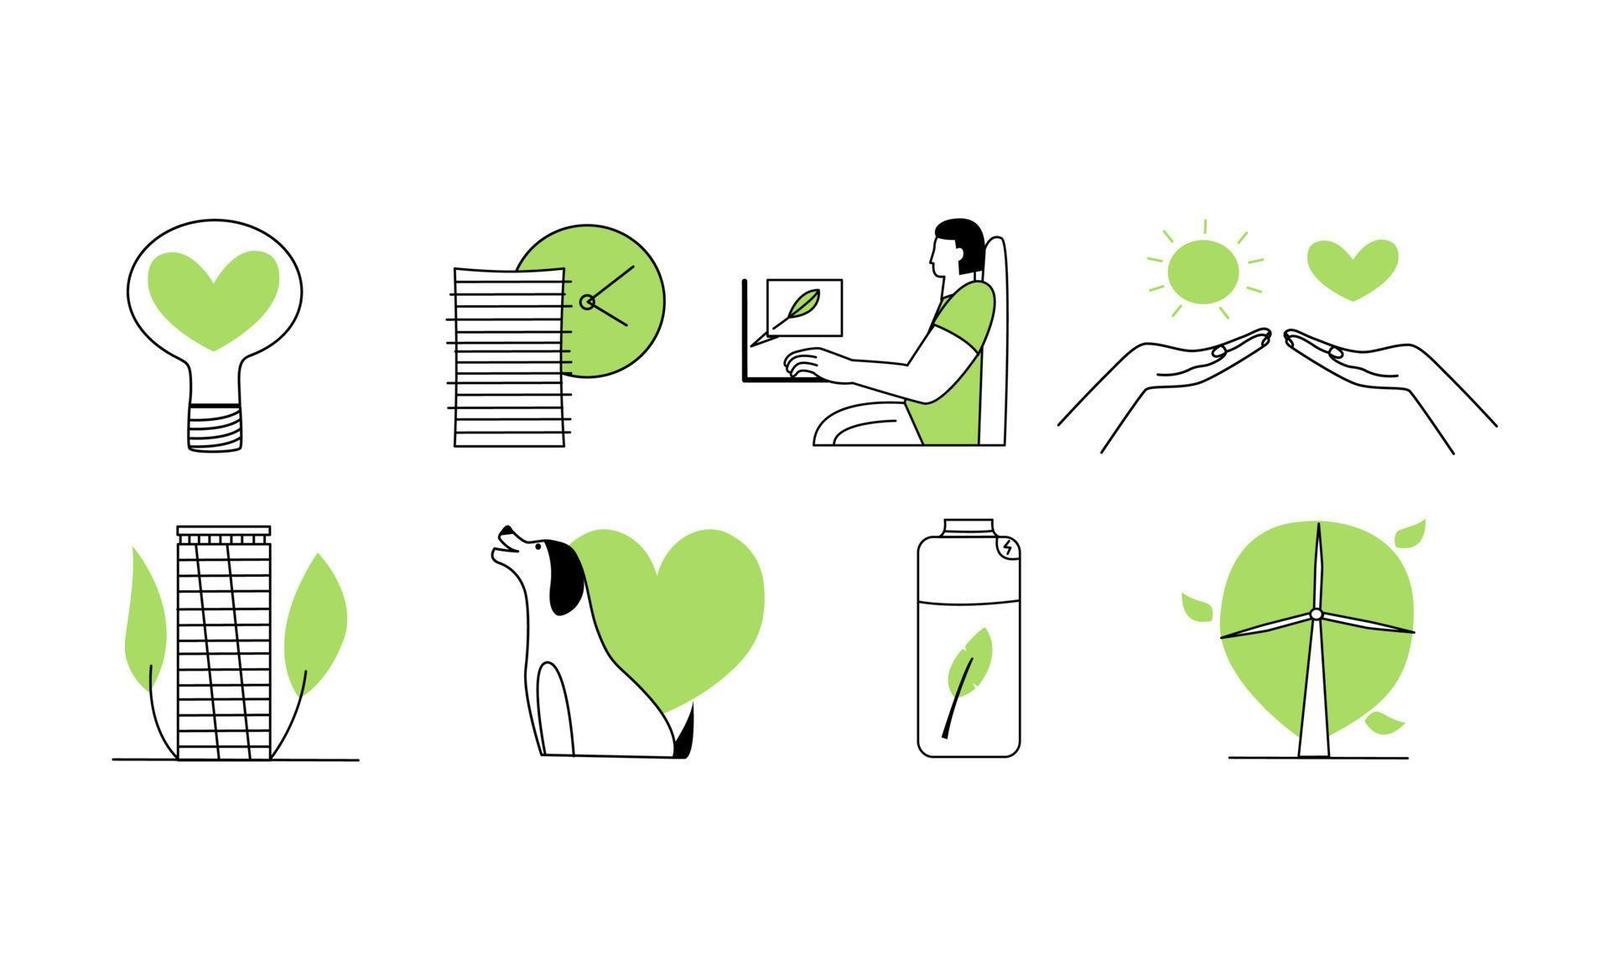 un ensemble d'icônes conceptuelles sur le thème de l'esg. icônes vertes d'environnement durable sertie de mains, moulin à vent, énergie, homme vecteur